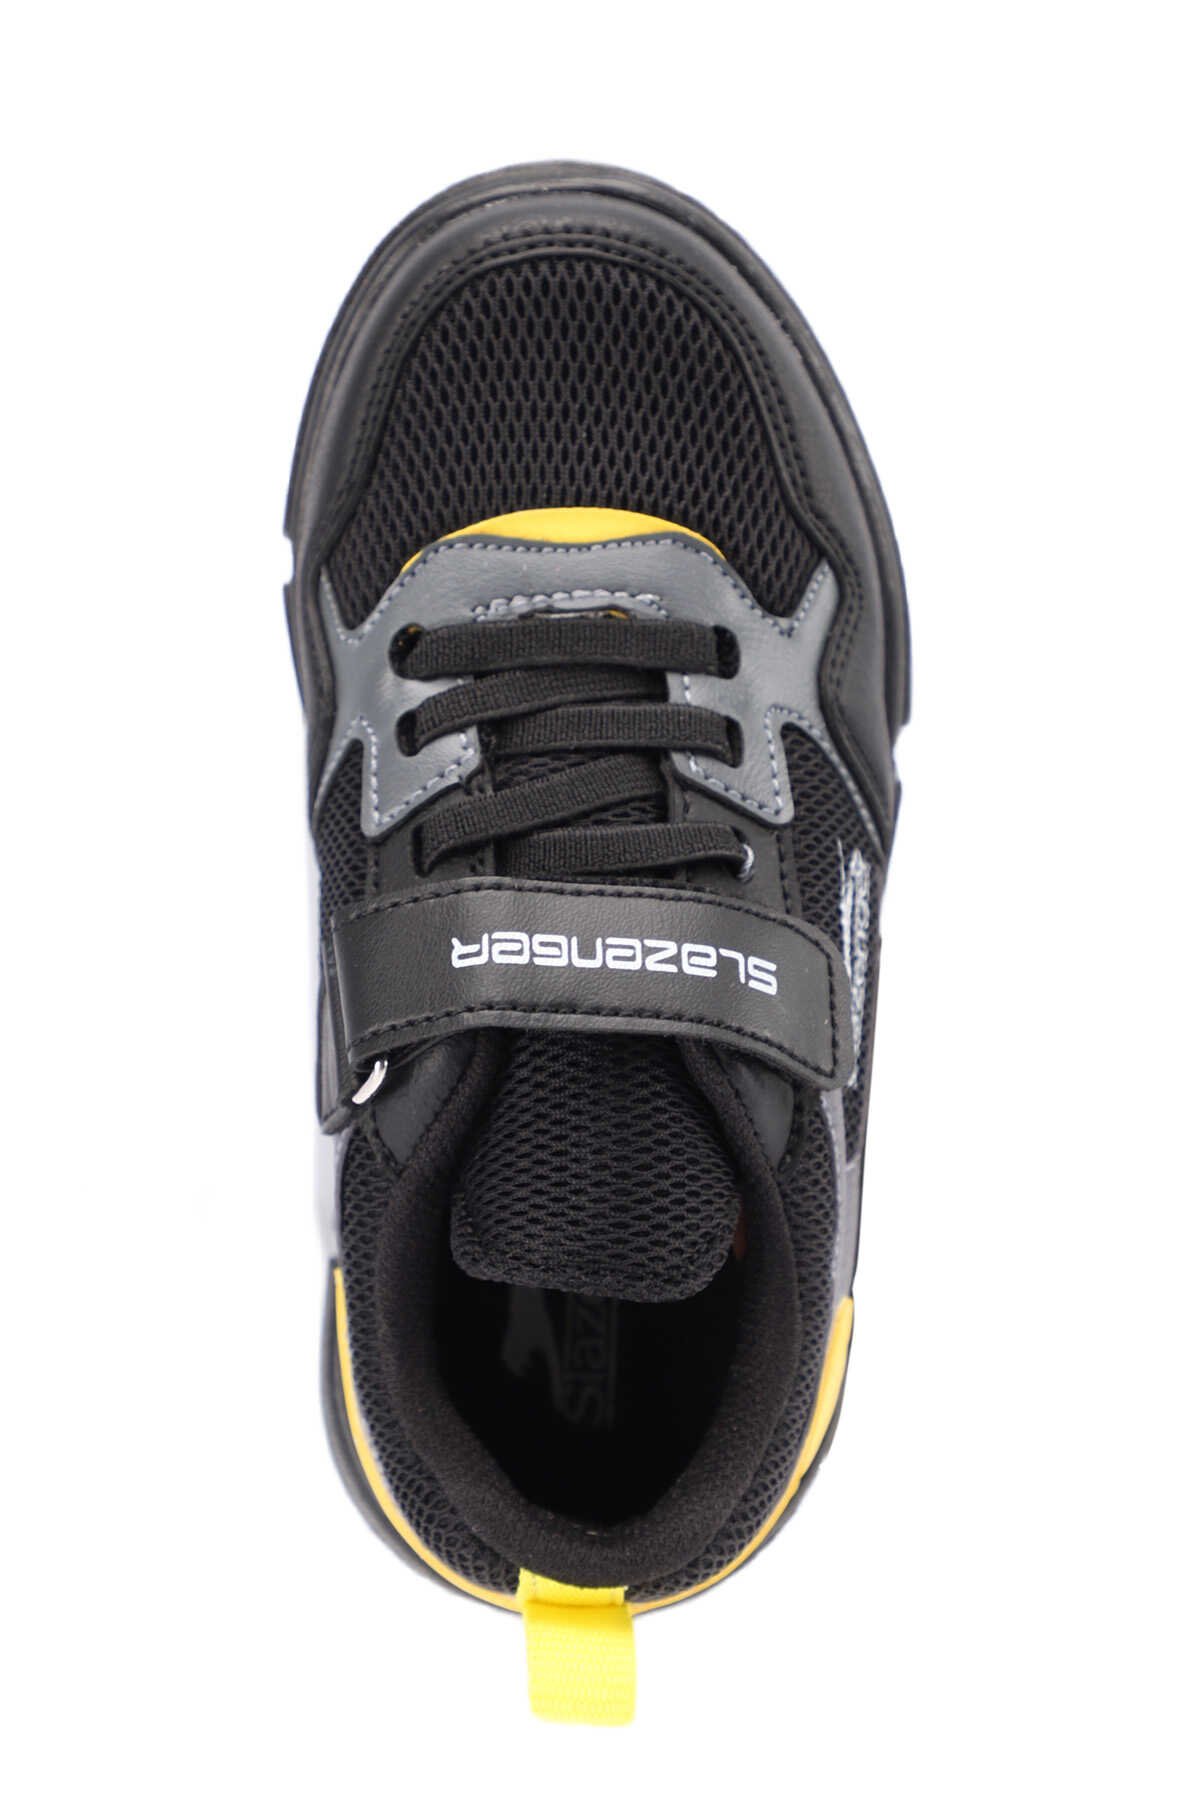 Slazenger KAZUE Sneaker Erkek Çocuk Ayakkabı Siyah / Siyah